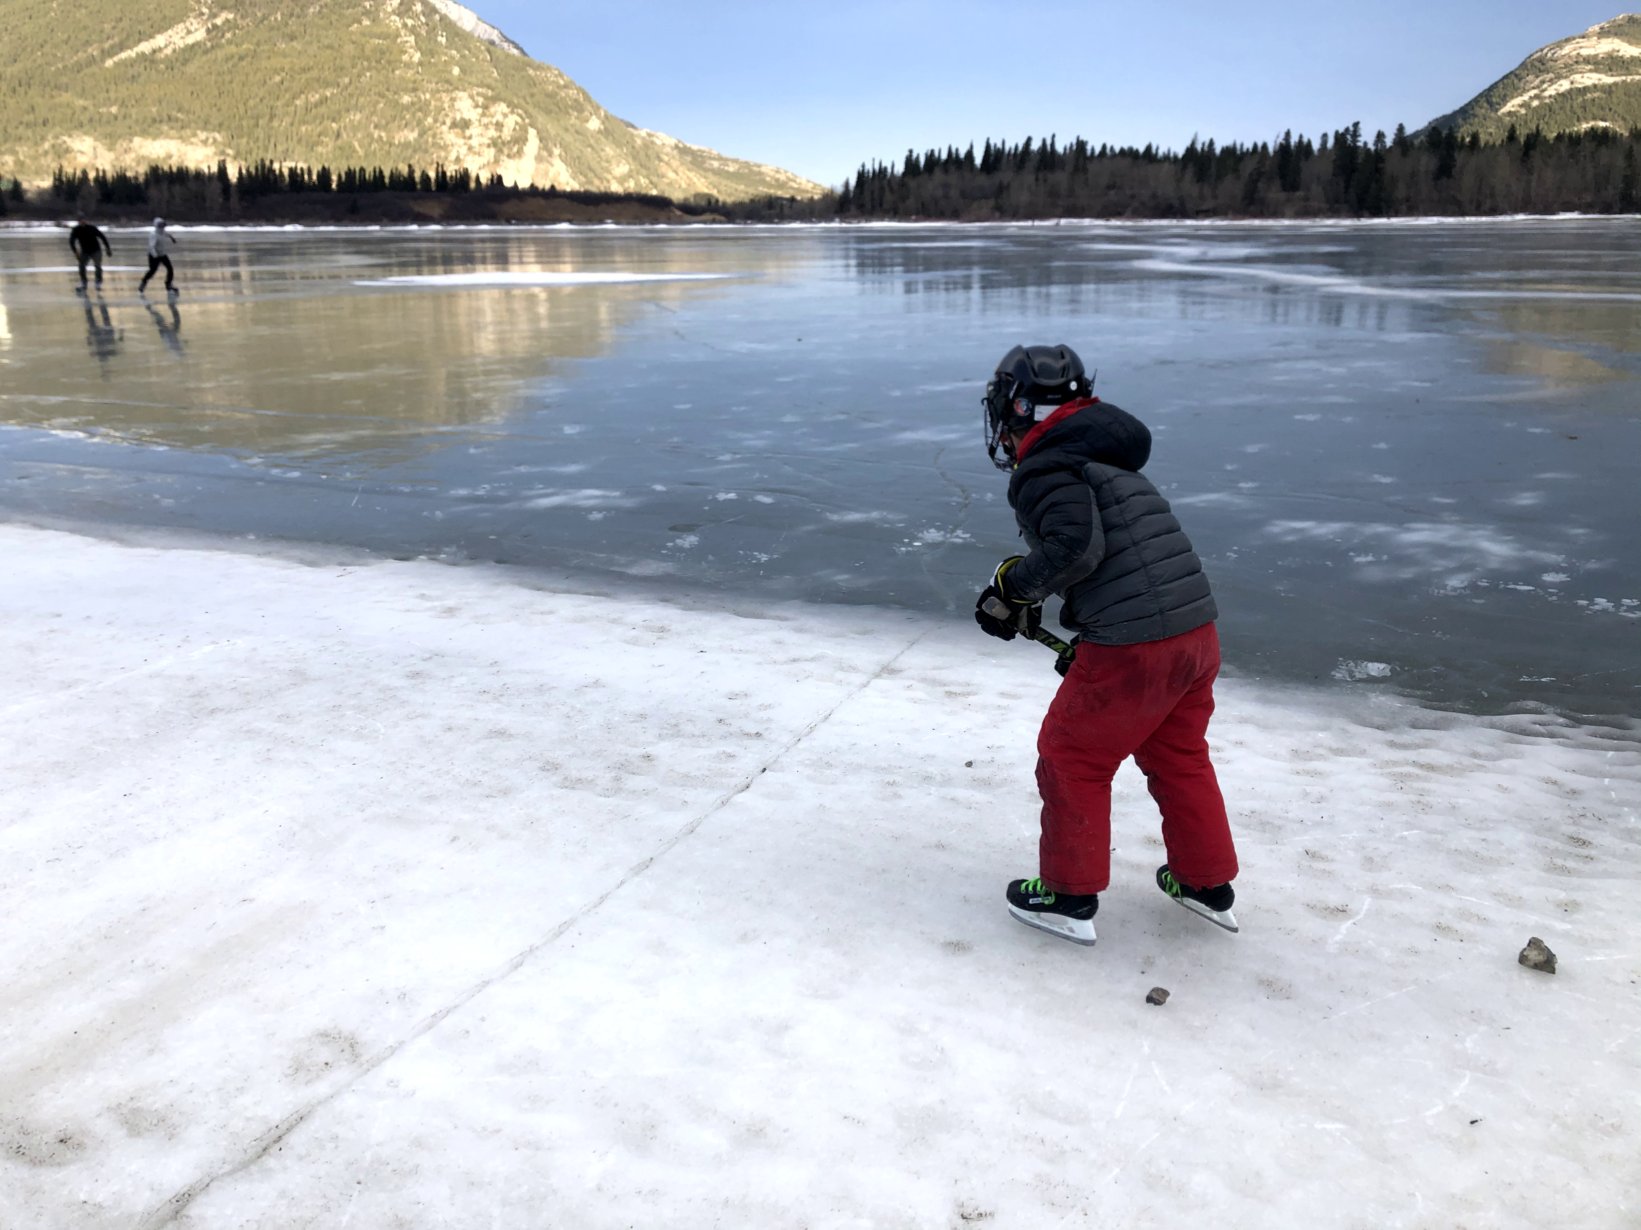 Familieneislaufen auf Kanadas natürlichen Seen und Teichen